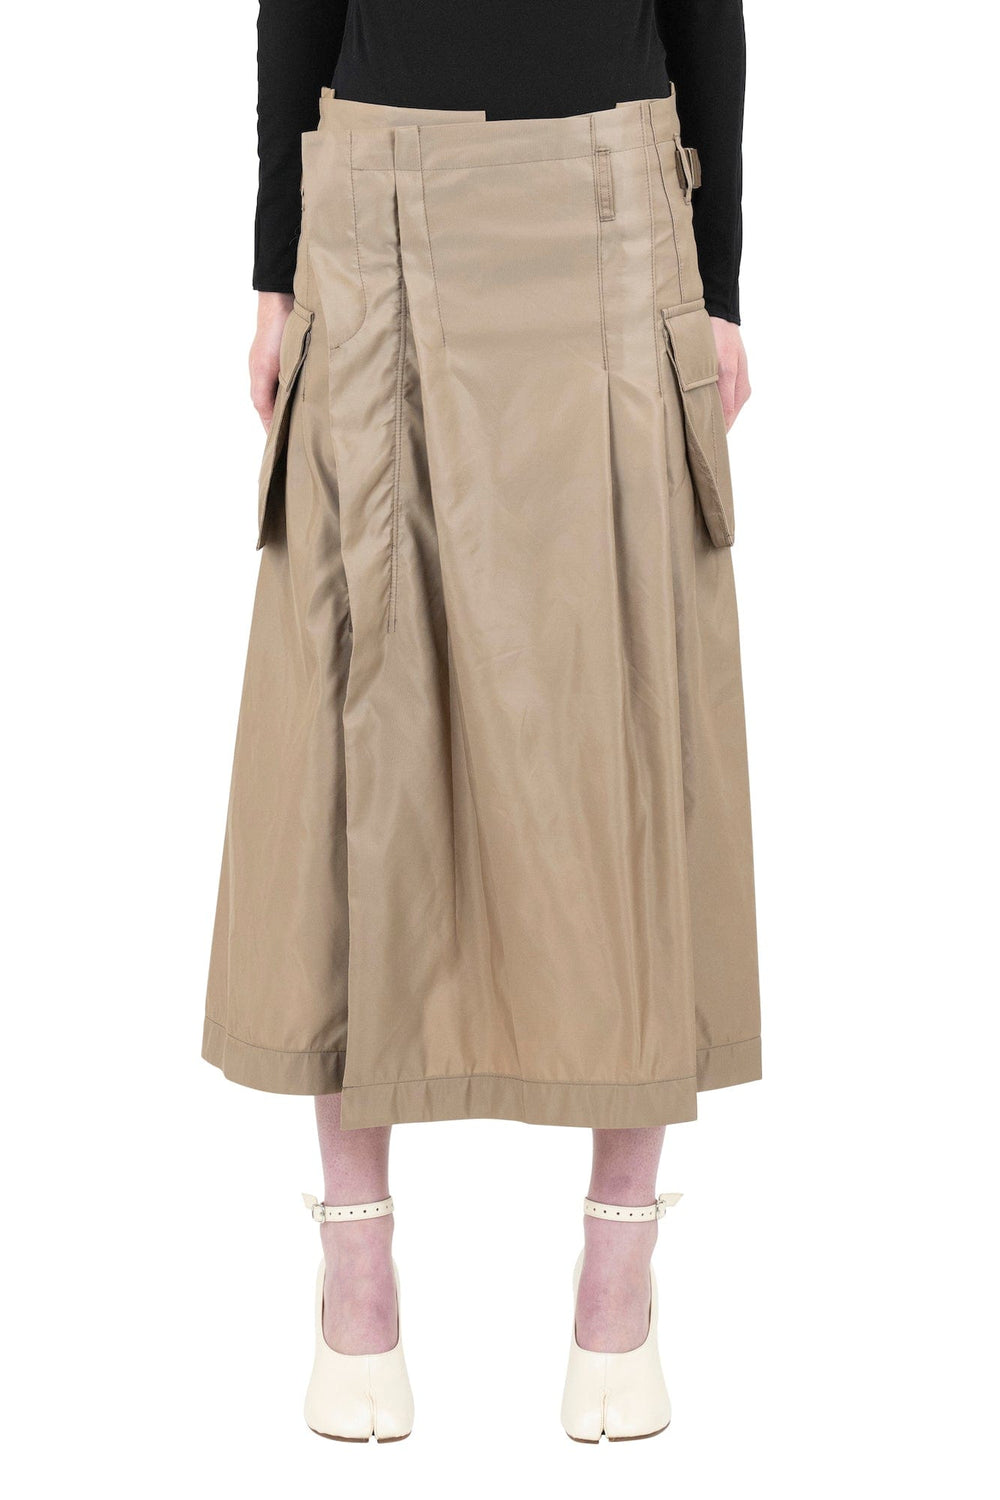 Sacai Nylon Twill Skirt – Antidote Fashion and Lifestyle